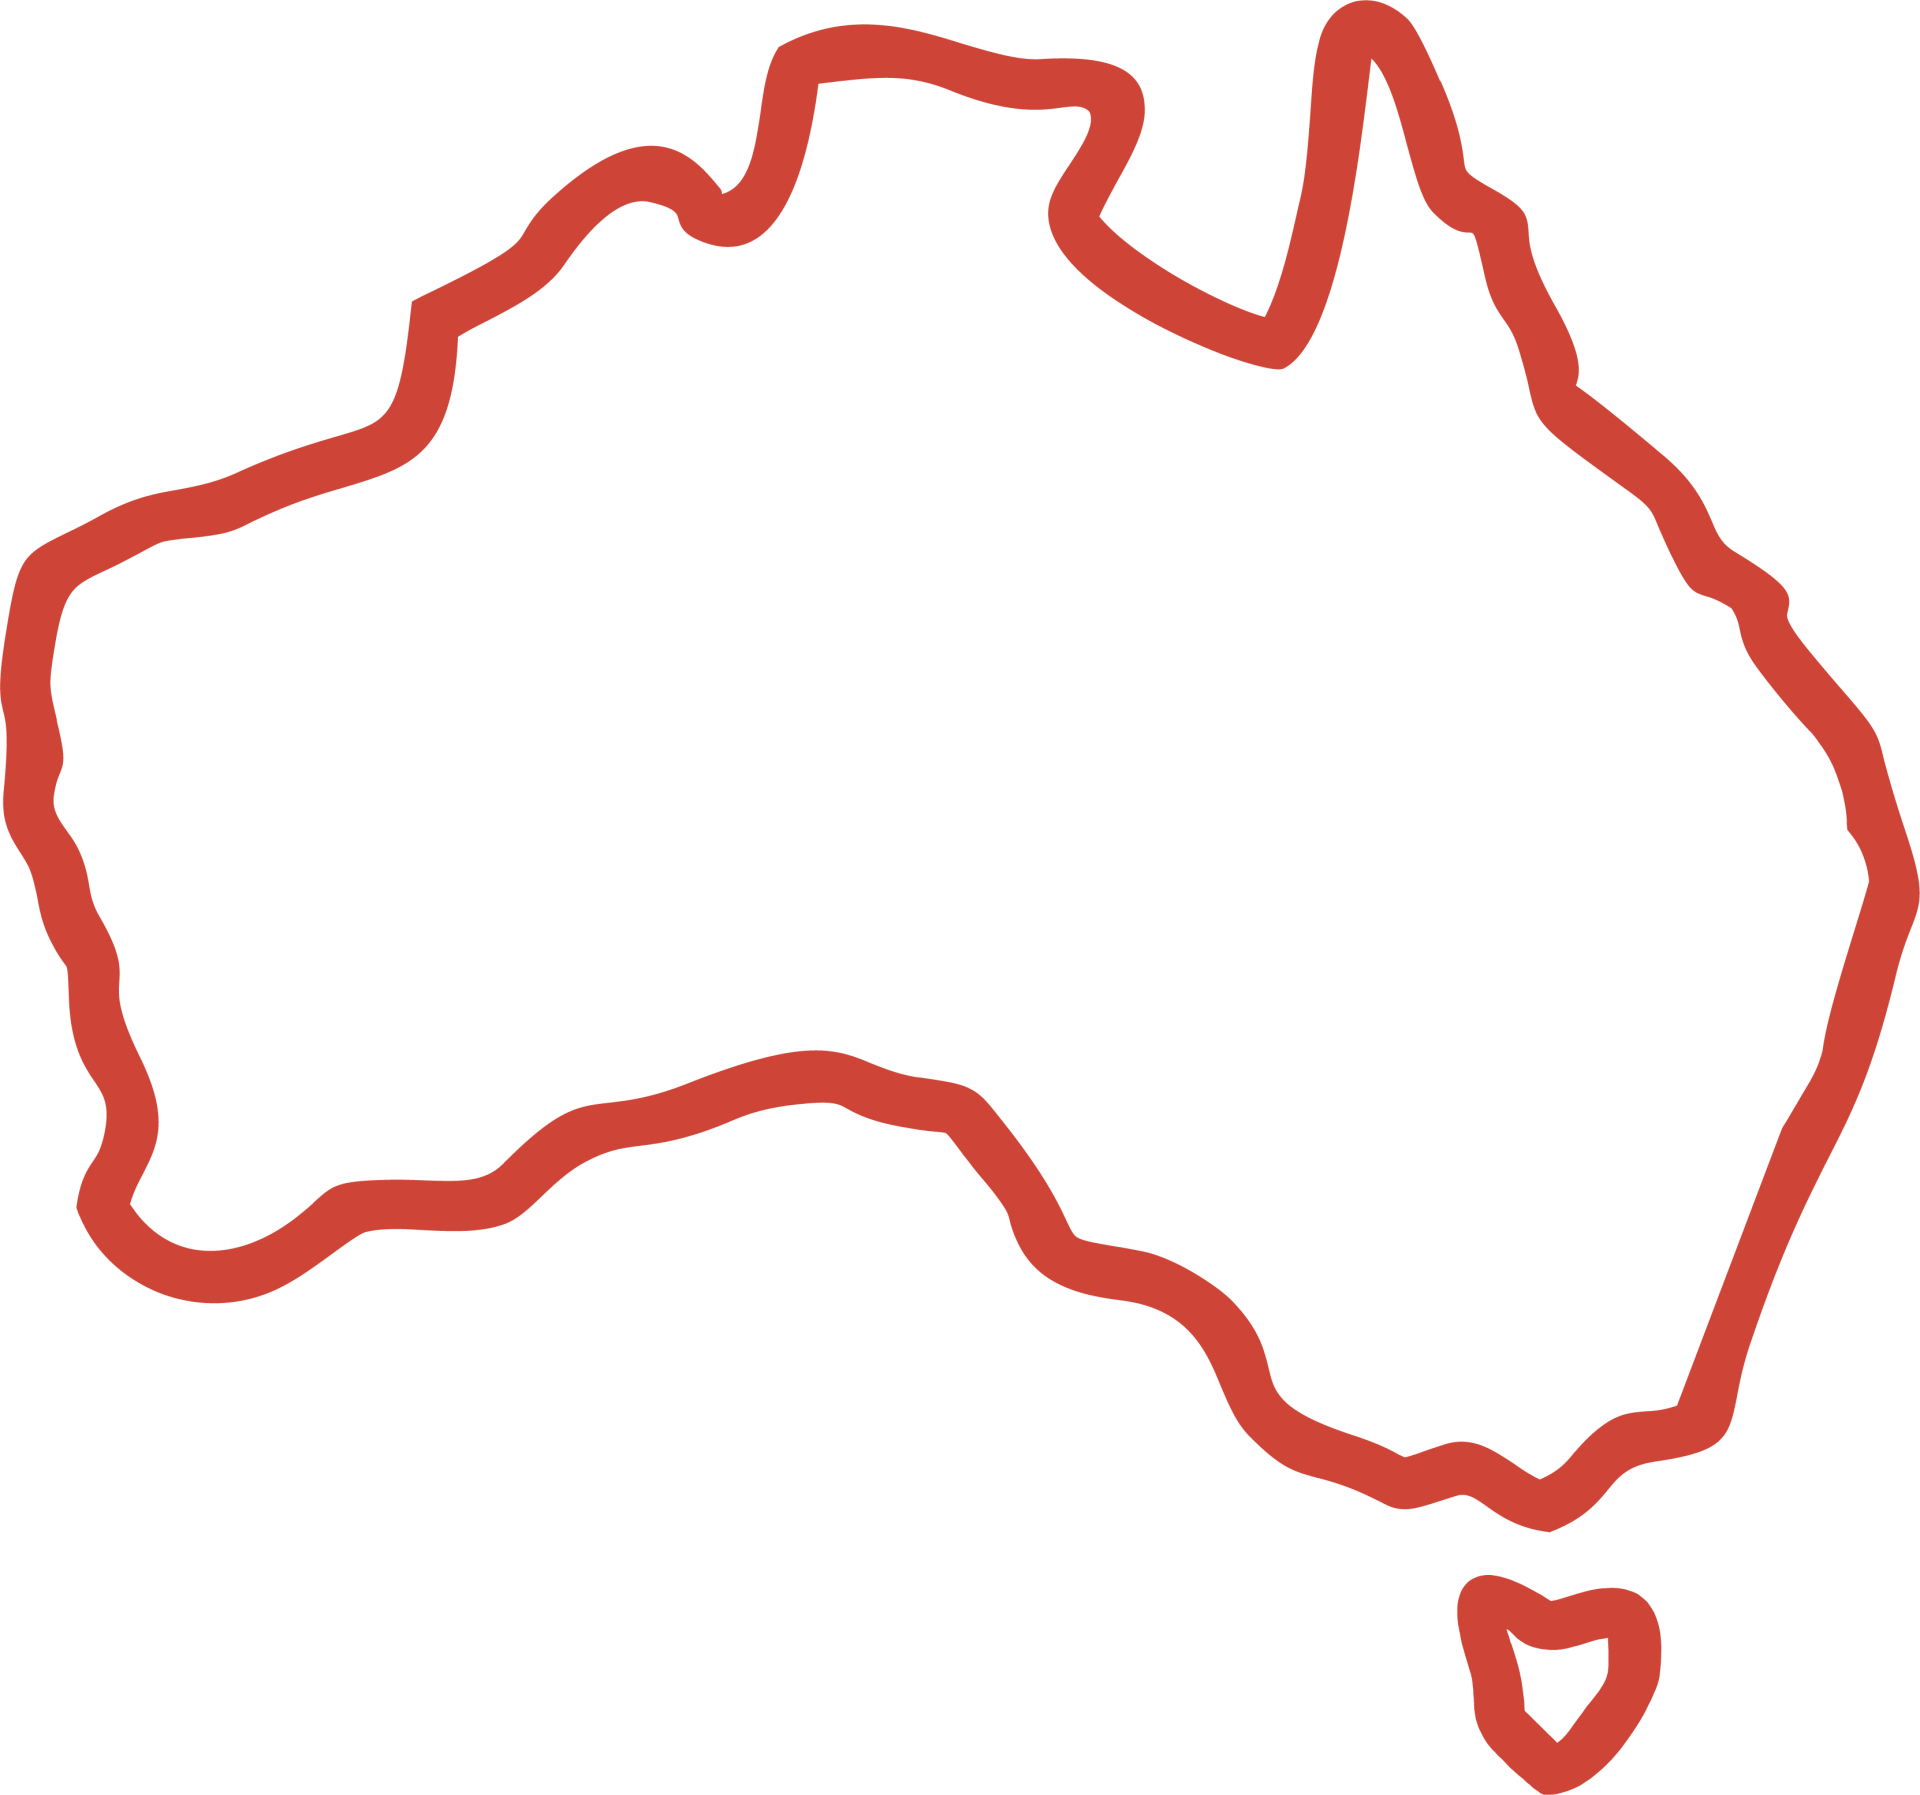 Outline Map of Australia
